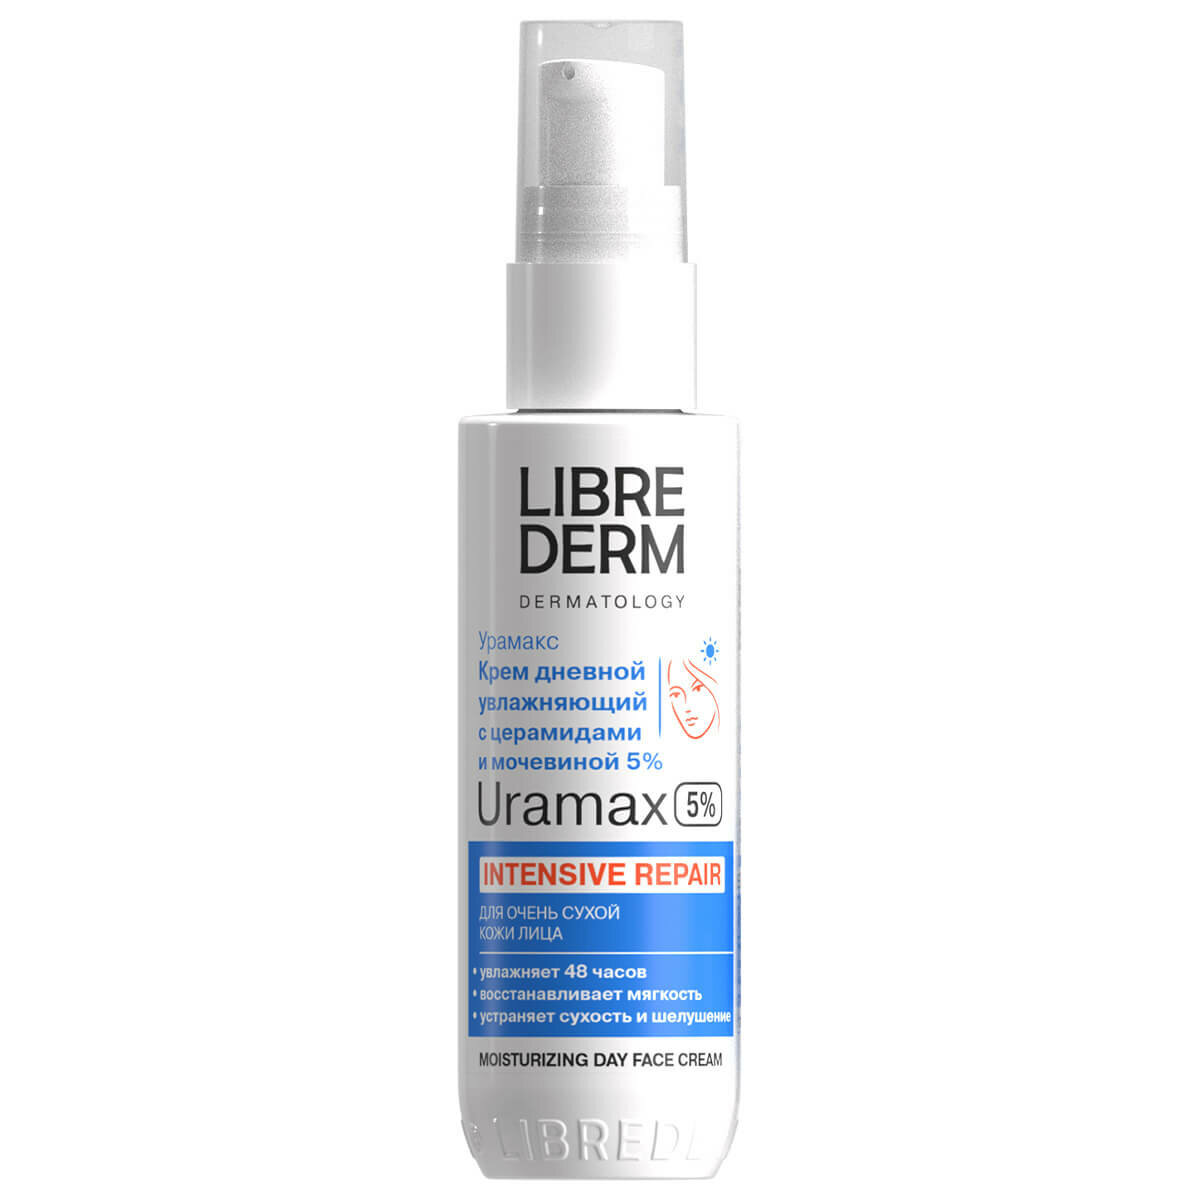 LIBREDERM URAMAX увлажняющий крем для лица с церамидами и мочевиной 5% дневной 50 мл, LIBREDERM